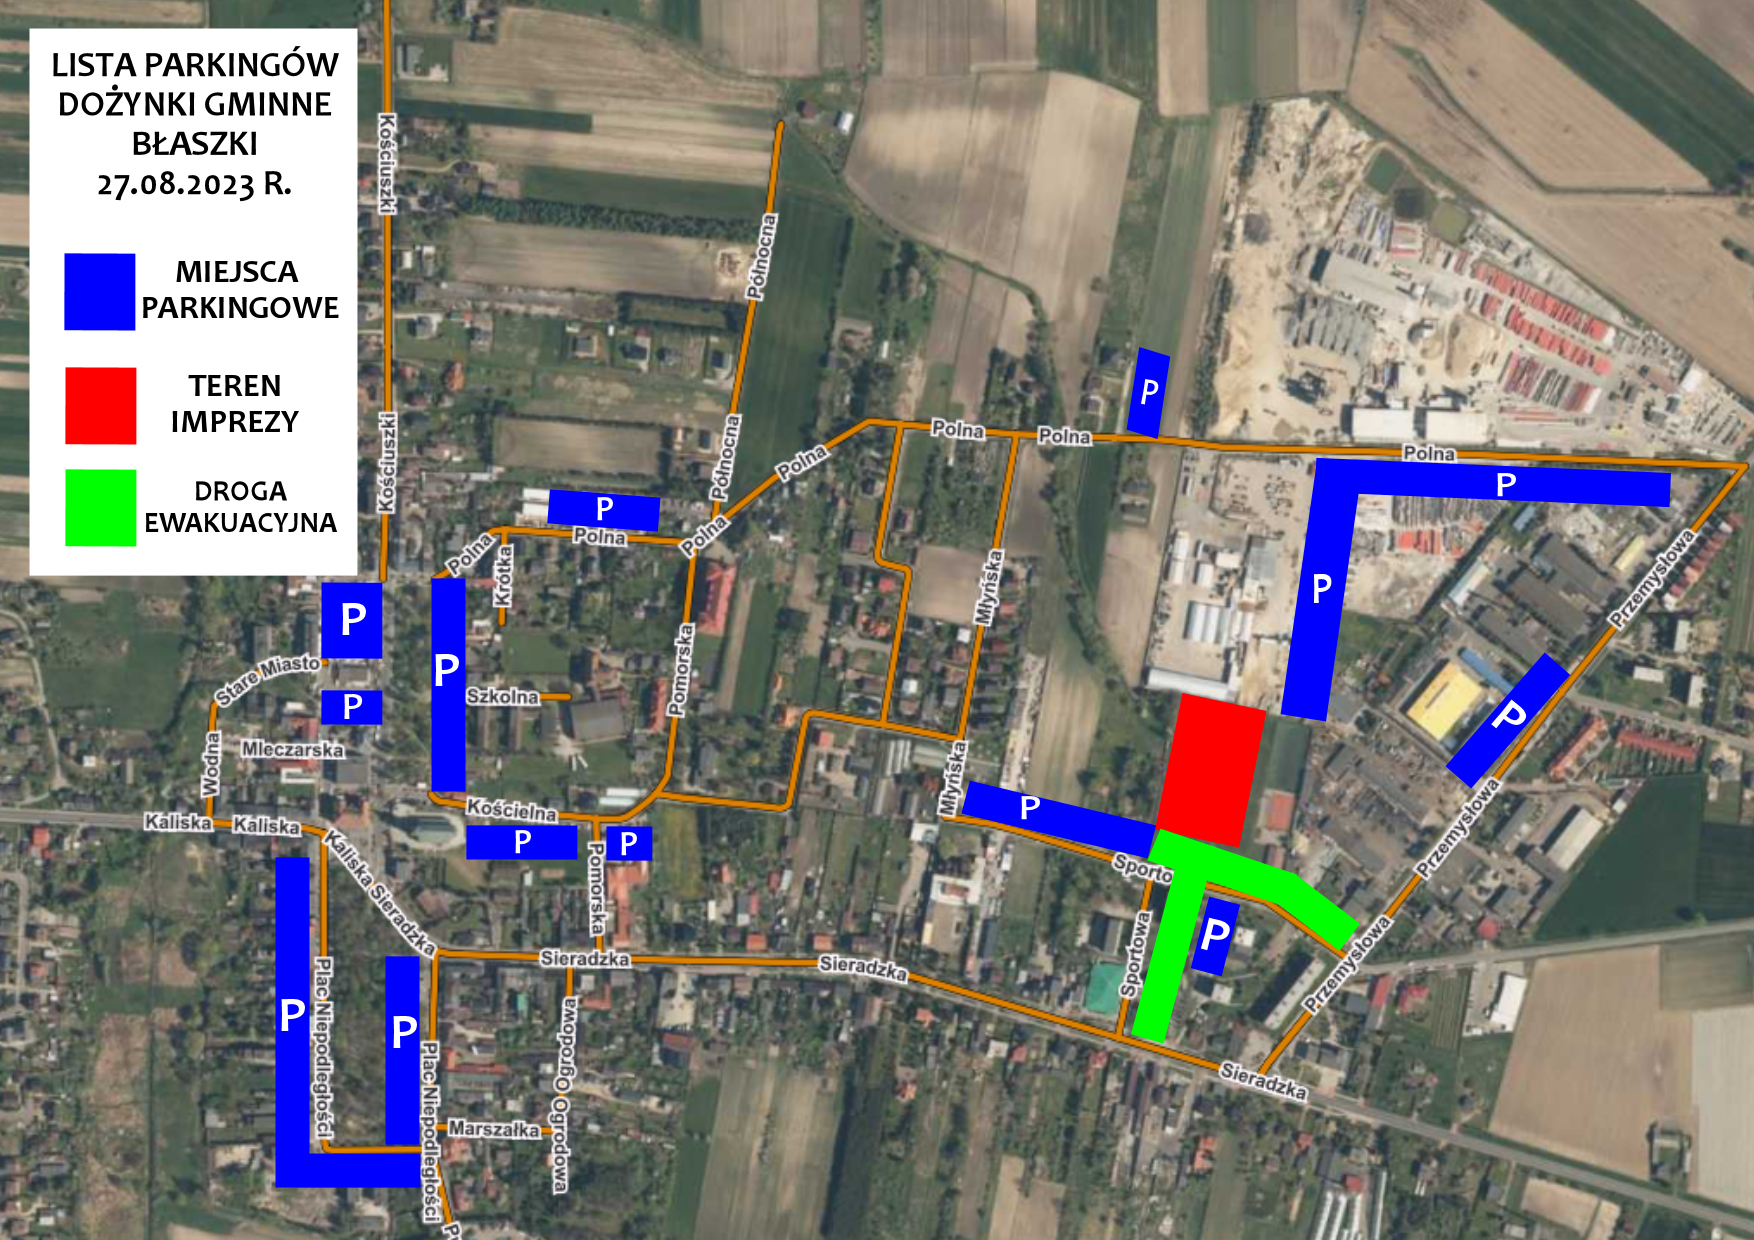 Mapka z miejscami parkingowymi na czas Dożynek Gminnych w Błaszkach